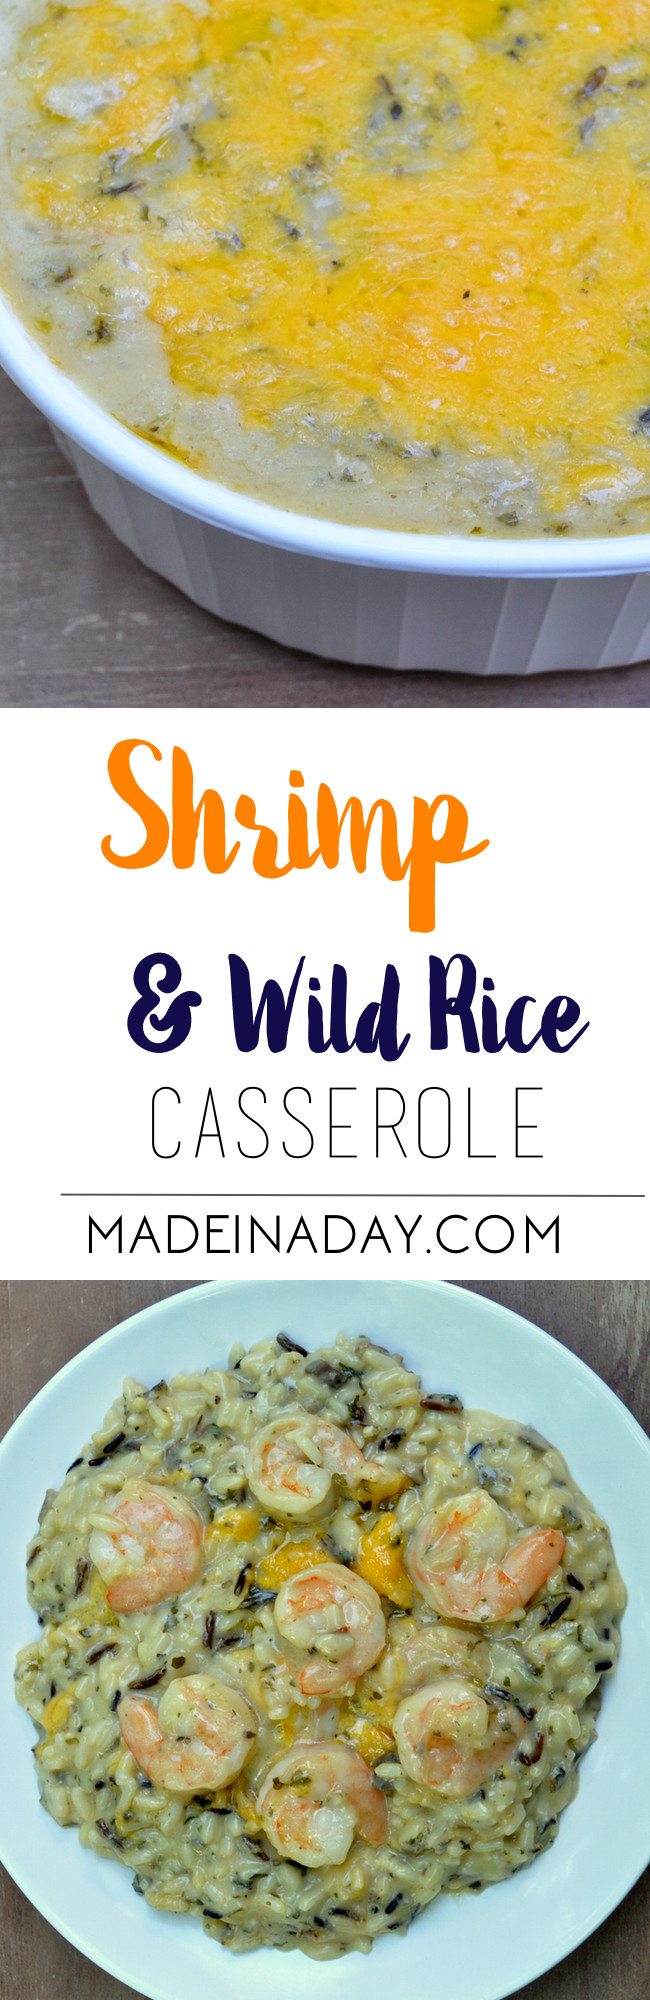 Seafood Casserole Paula Deen
 Shrimp & Wild Rice Casserole Recipe